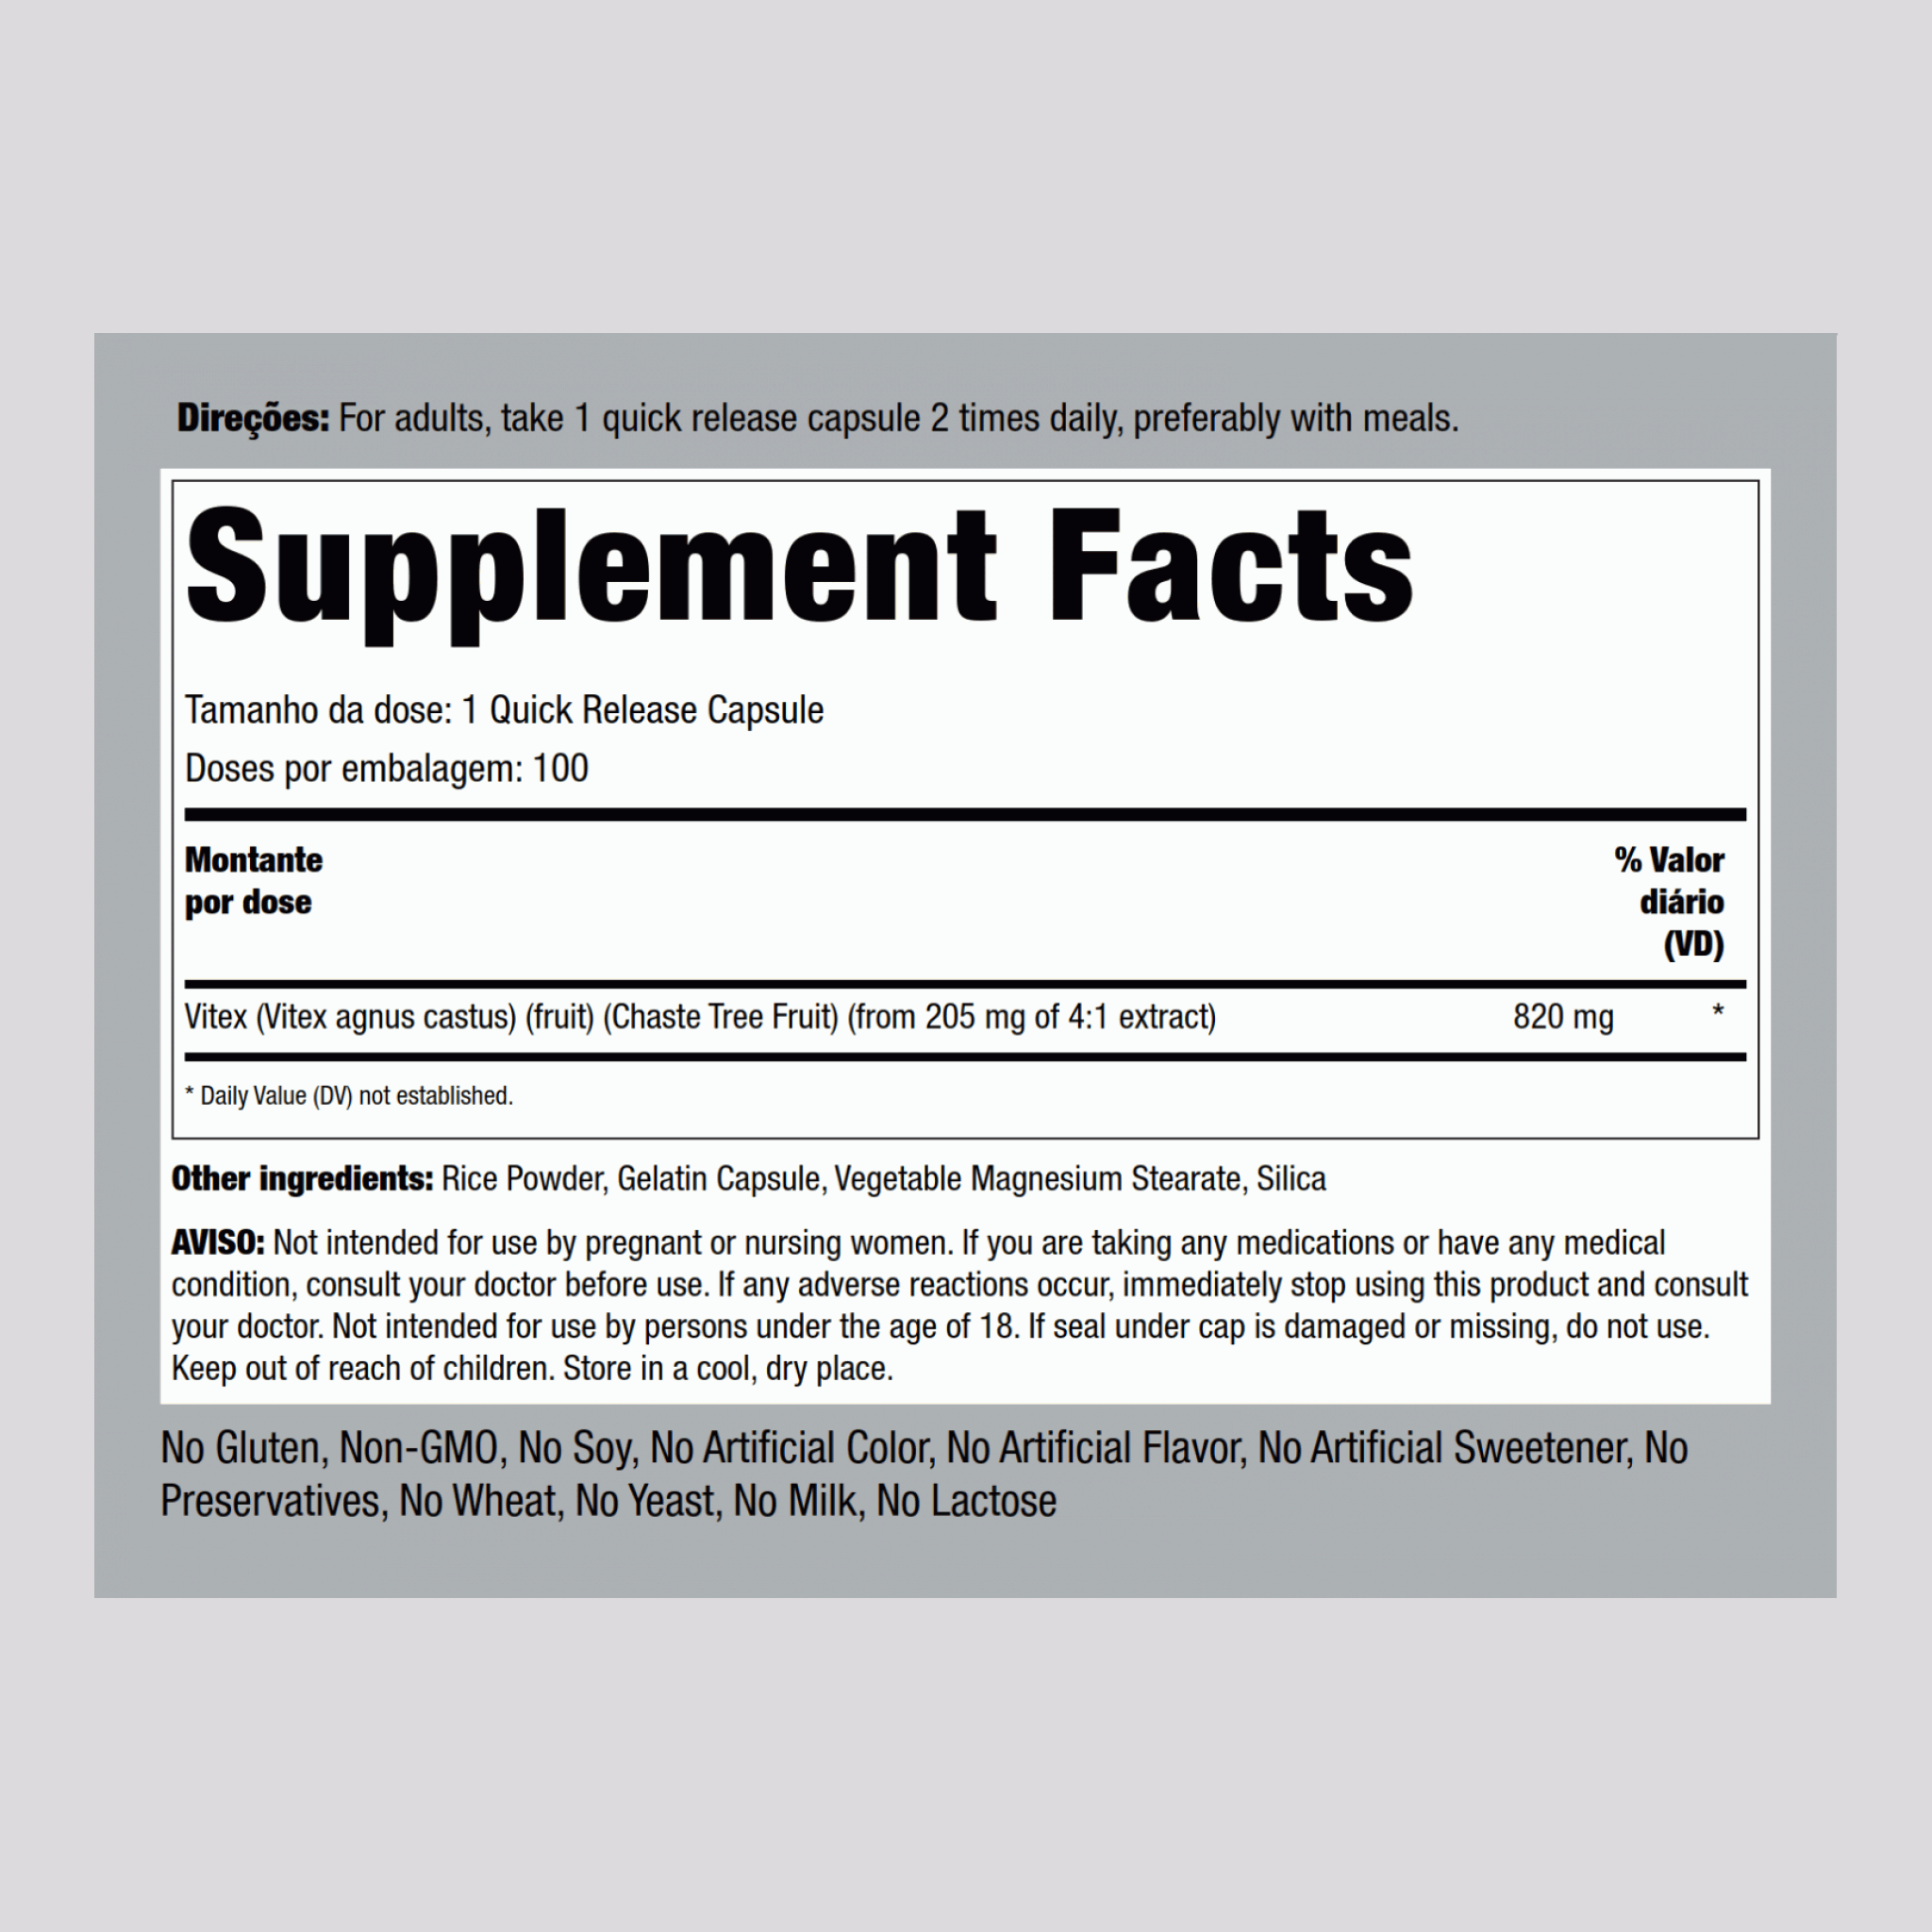 Vitex (pimenteiro-bravo)  820 mg 100 Cápsulas de Rápida Absorção     